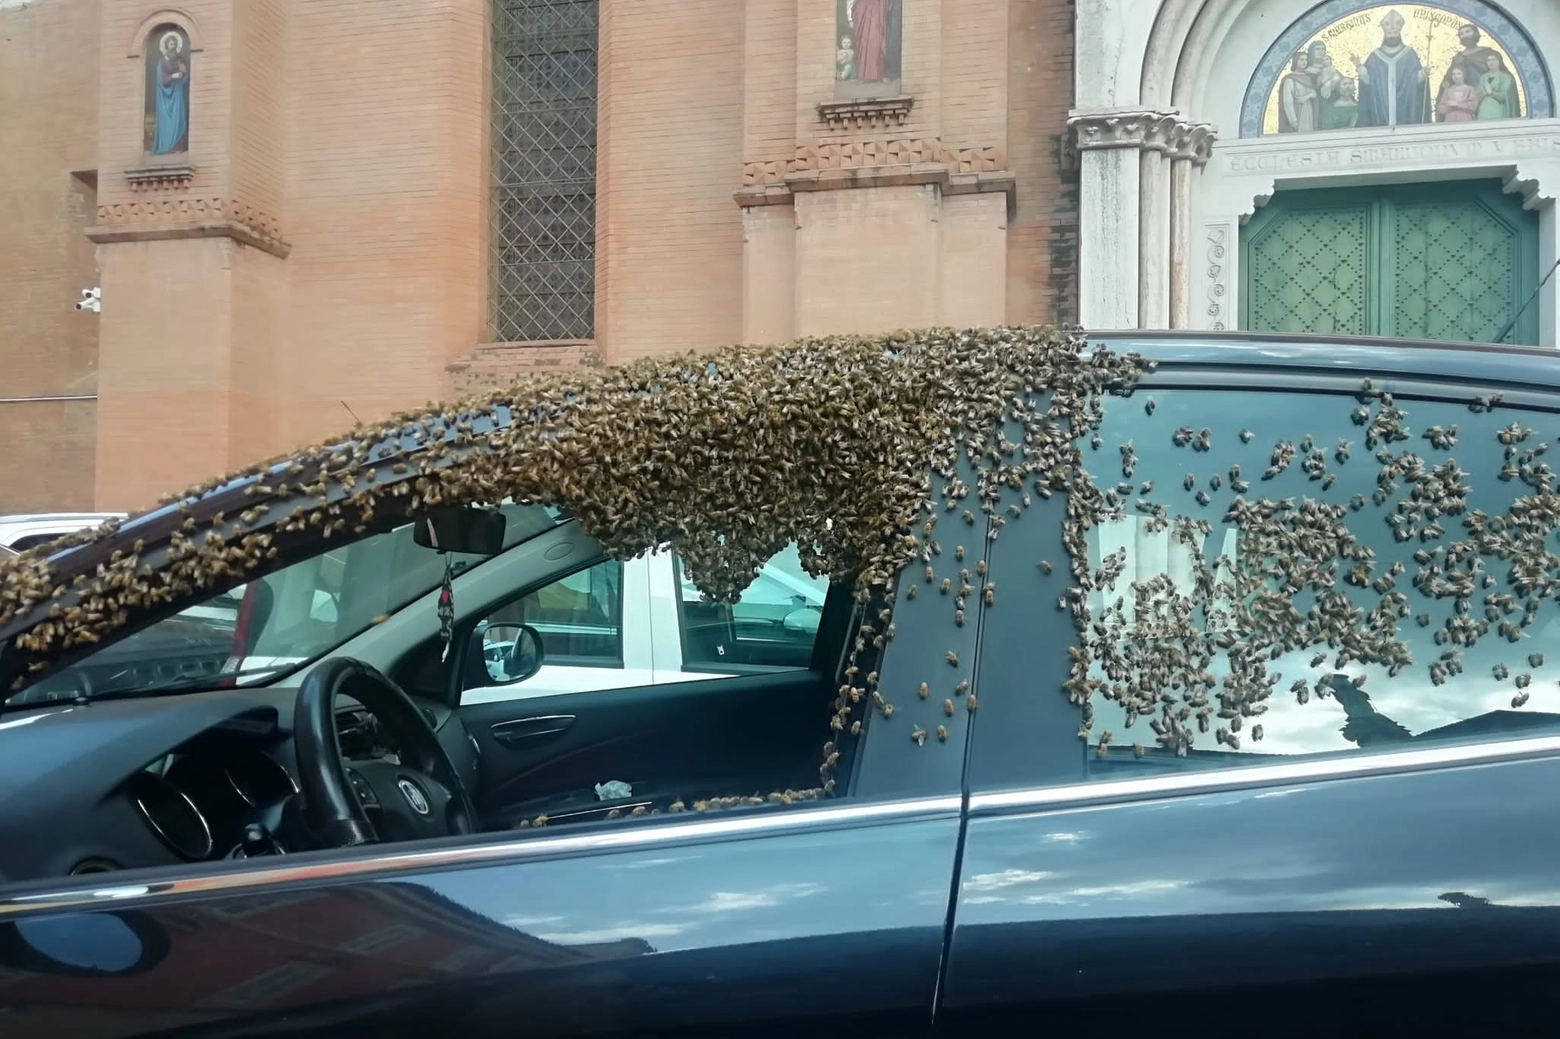 Le api in migrazione si sono fermate a riposarsi su un'auto posteggiata in piazza San Martino